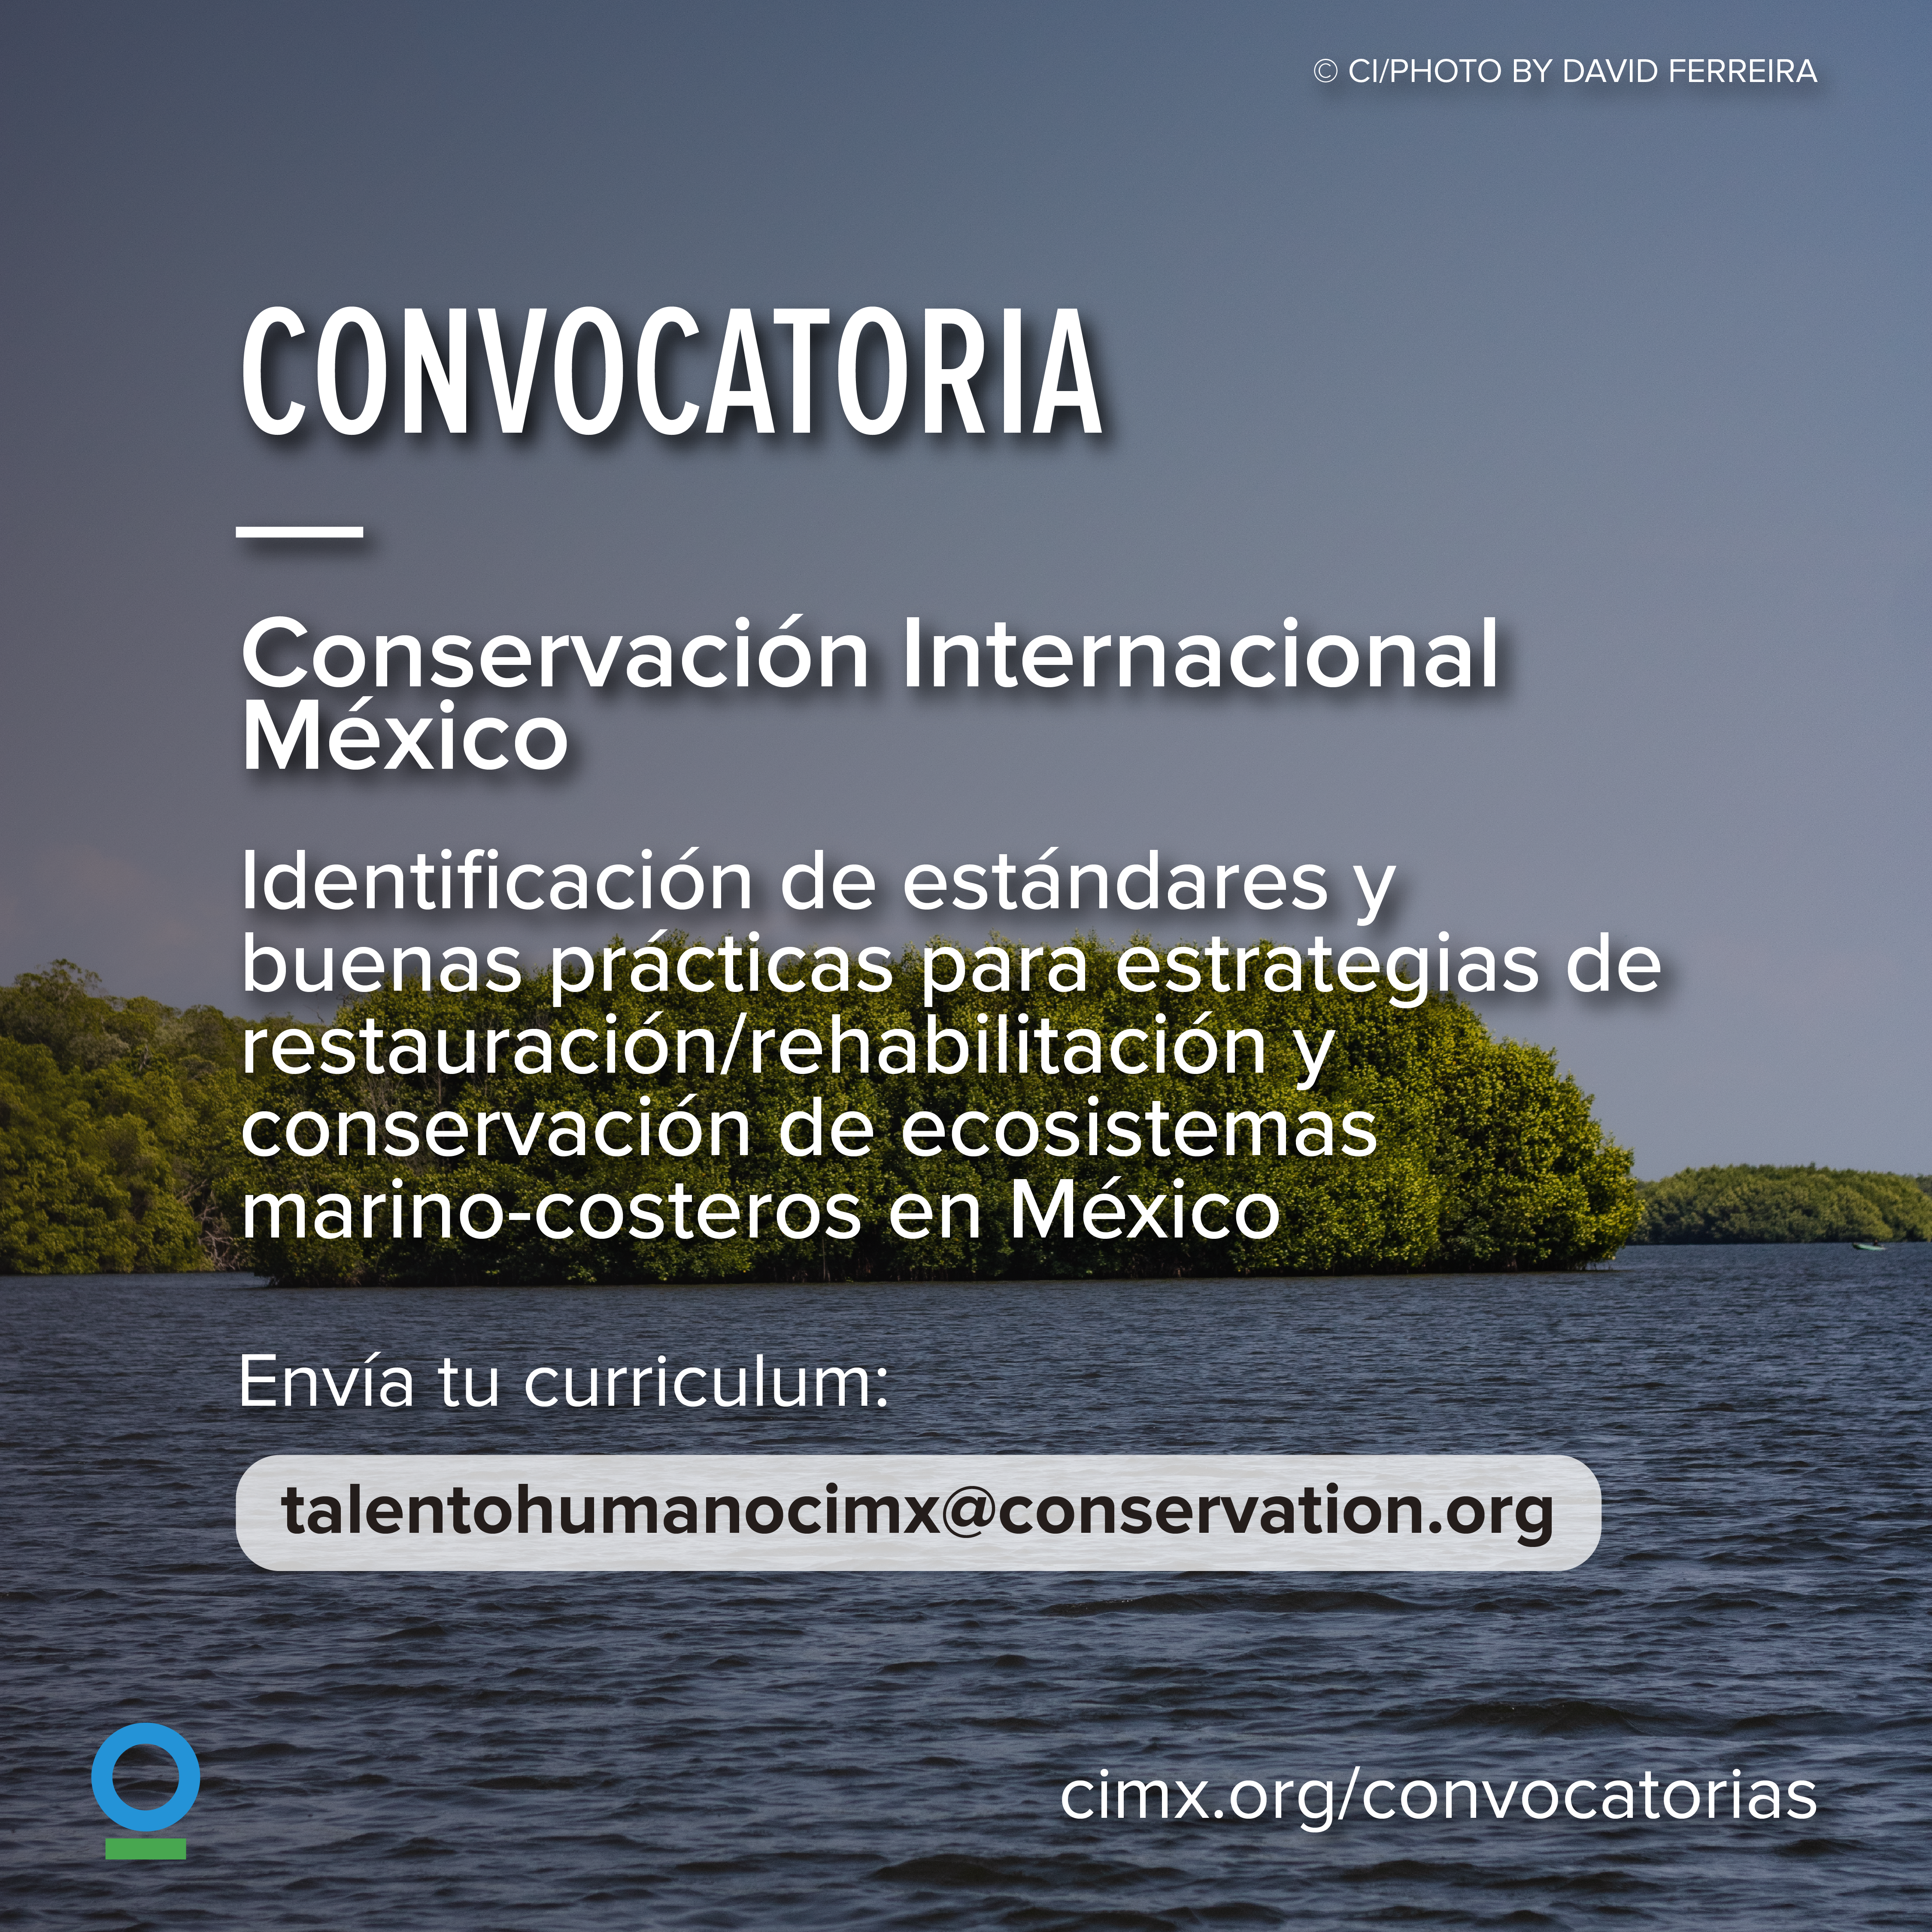 Identificación de estándares y buenas prácticas para estrategias de restauración/rehabilitación y conservación de ecosistemas marino-costeros en México. (CIMX)